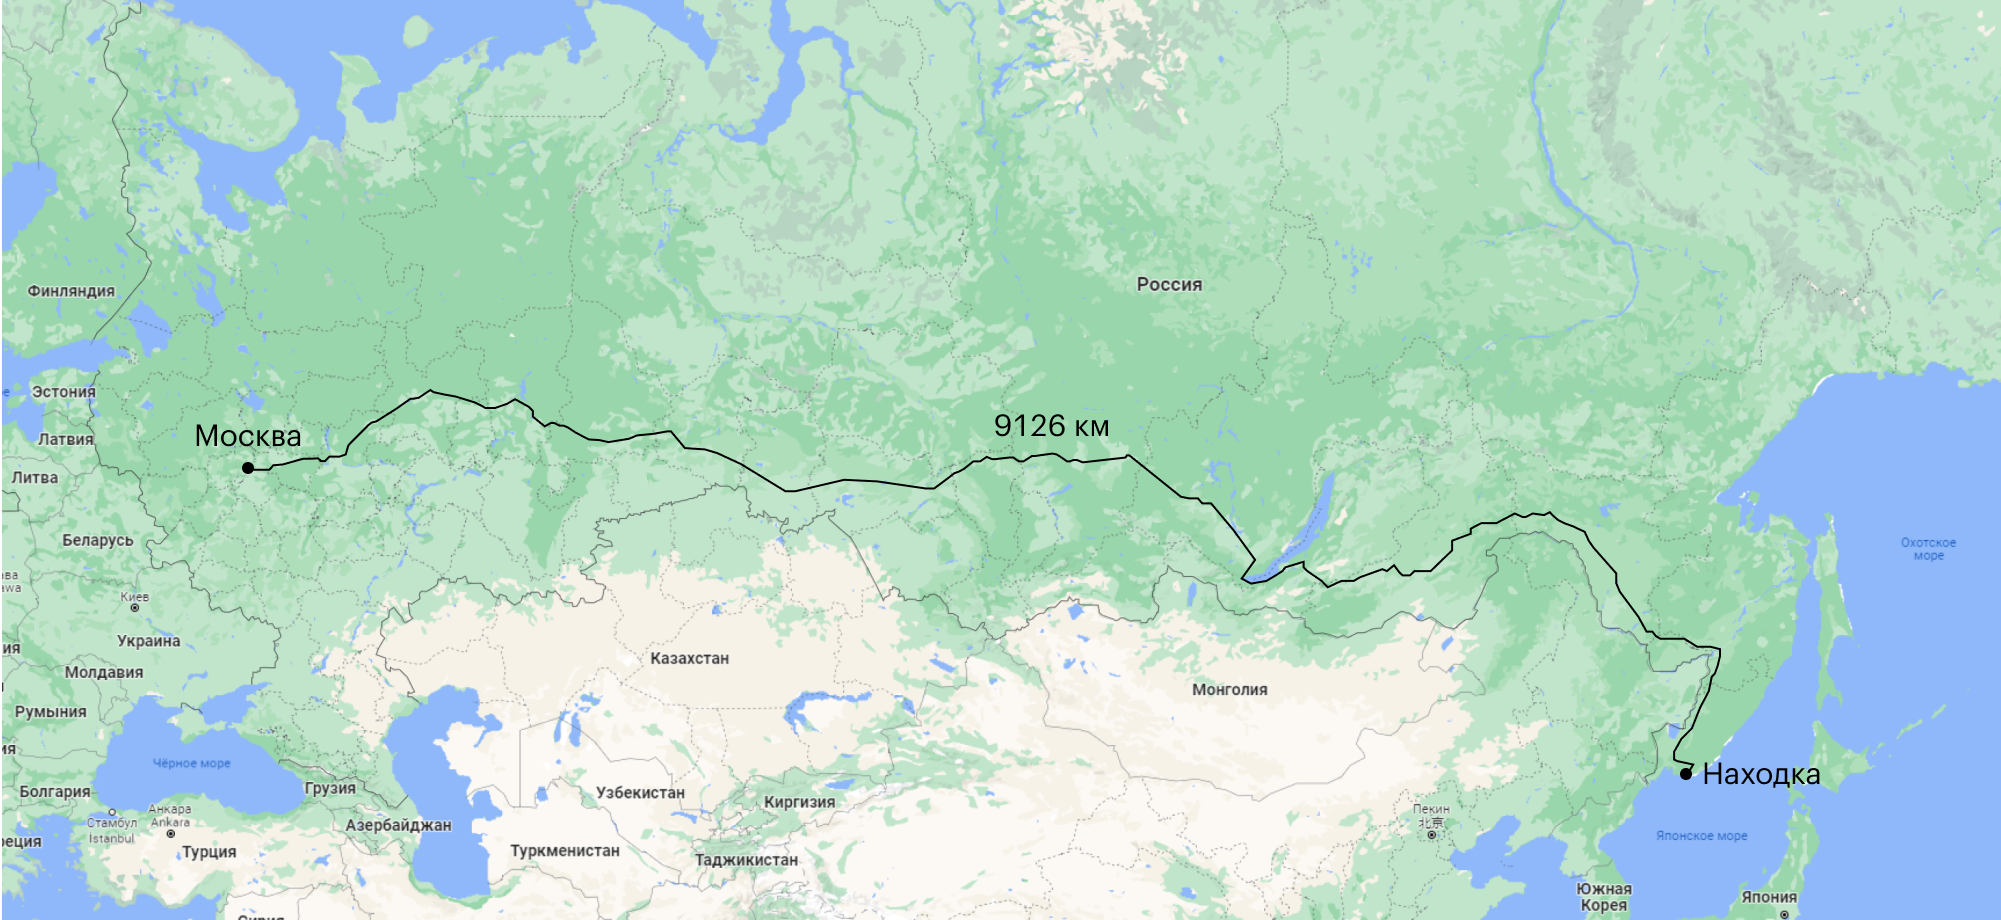 Расстояние до Москвы на поезде на карте